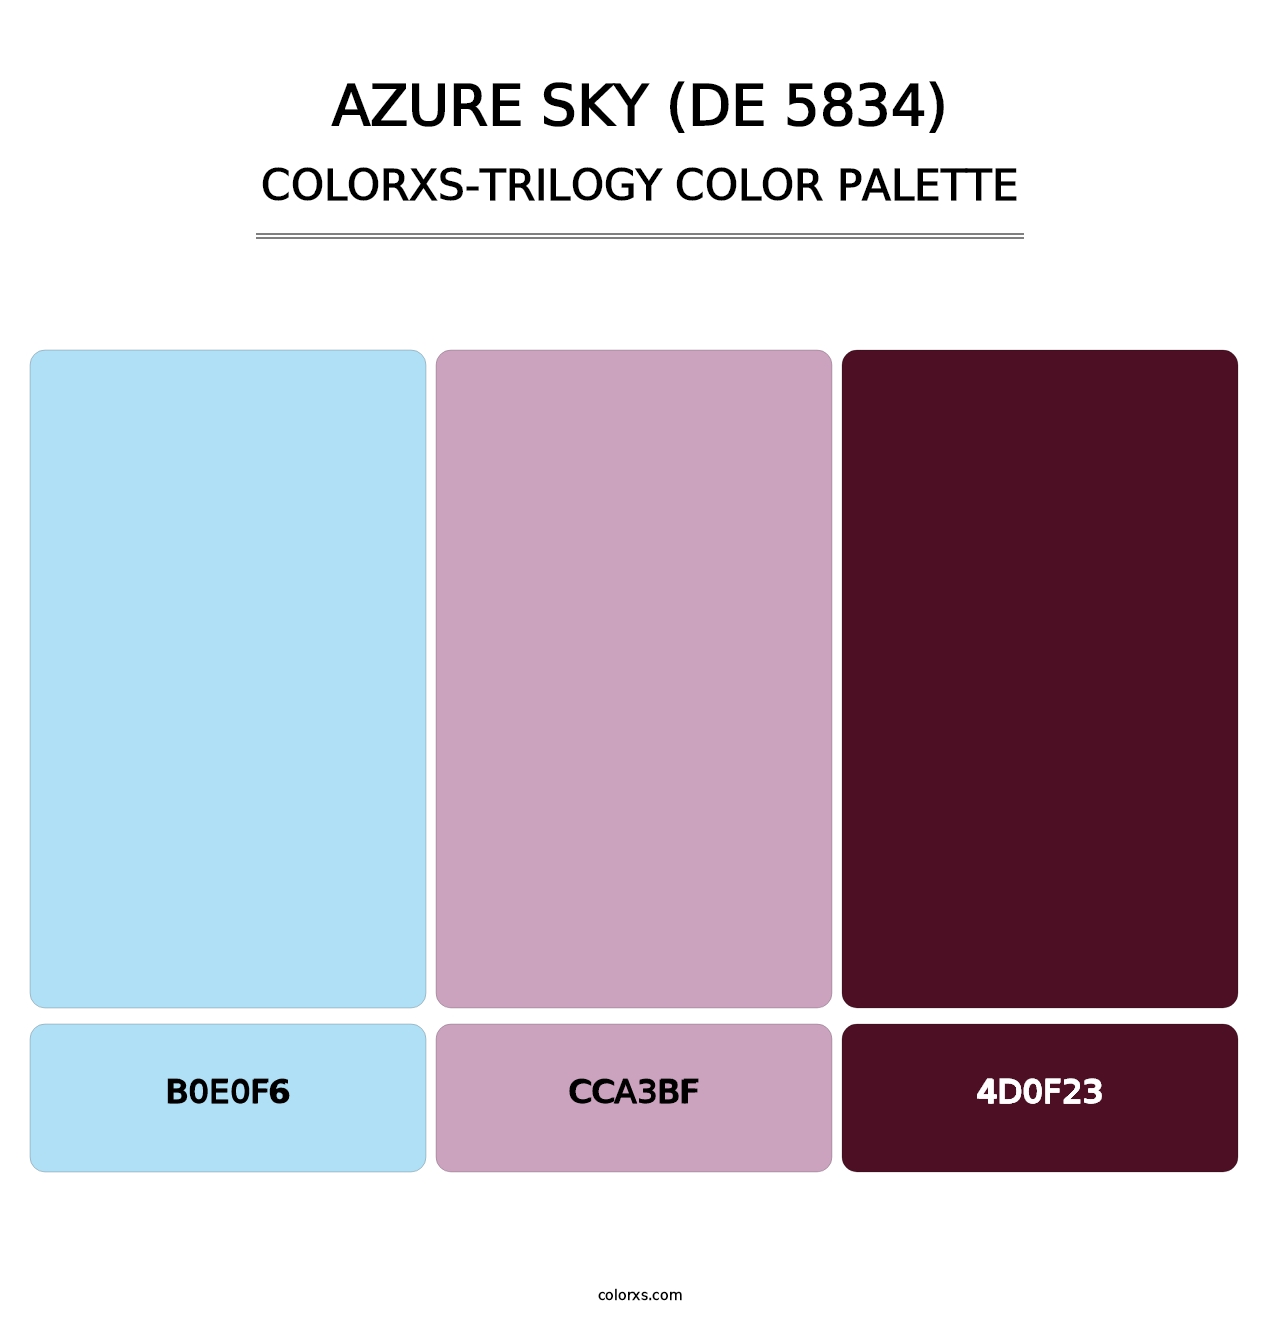 Azure Sky (DE 5834) - Colorxs Trilogy Palette